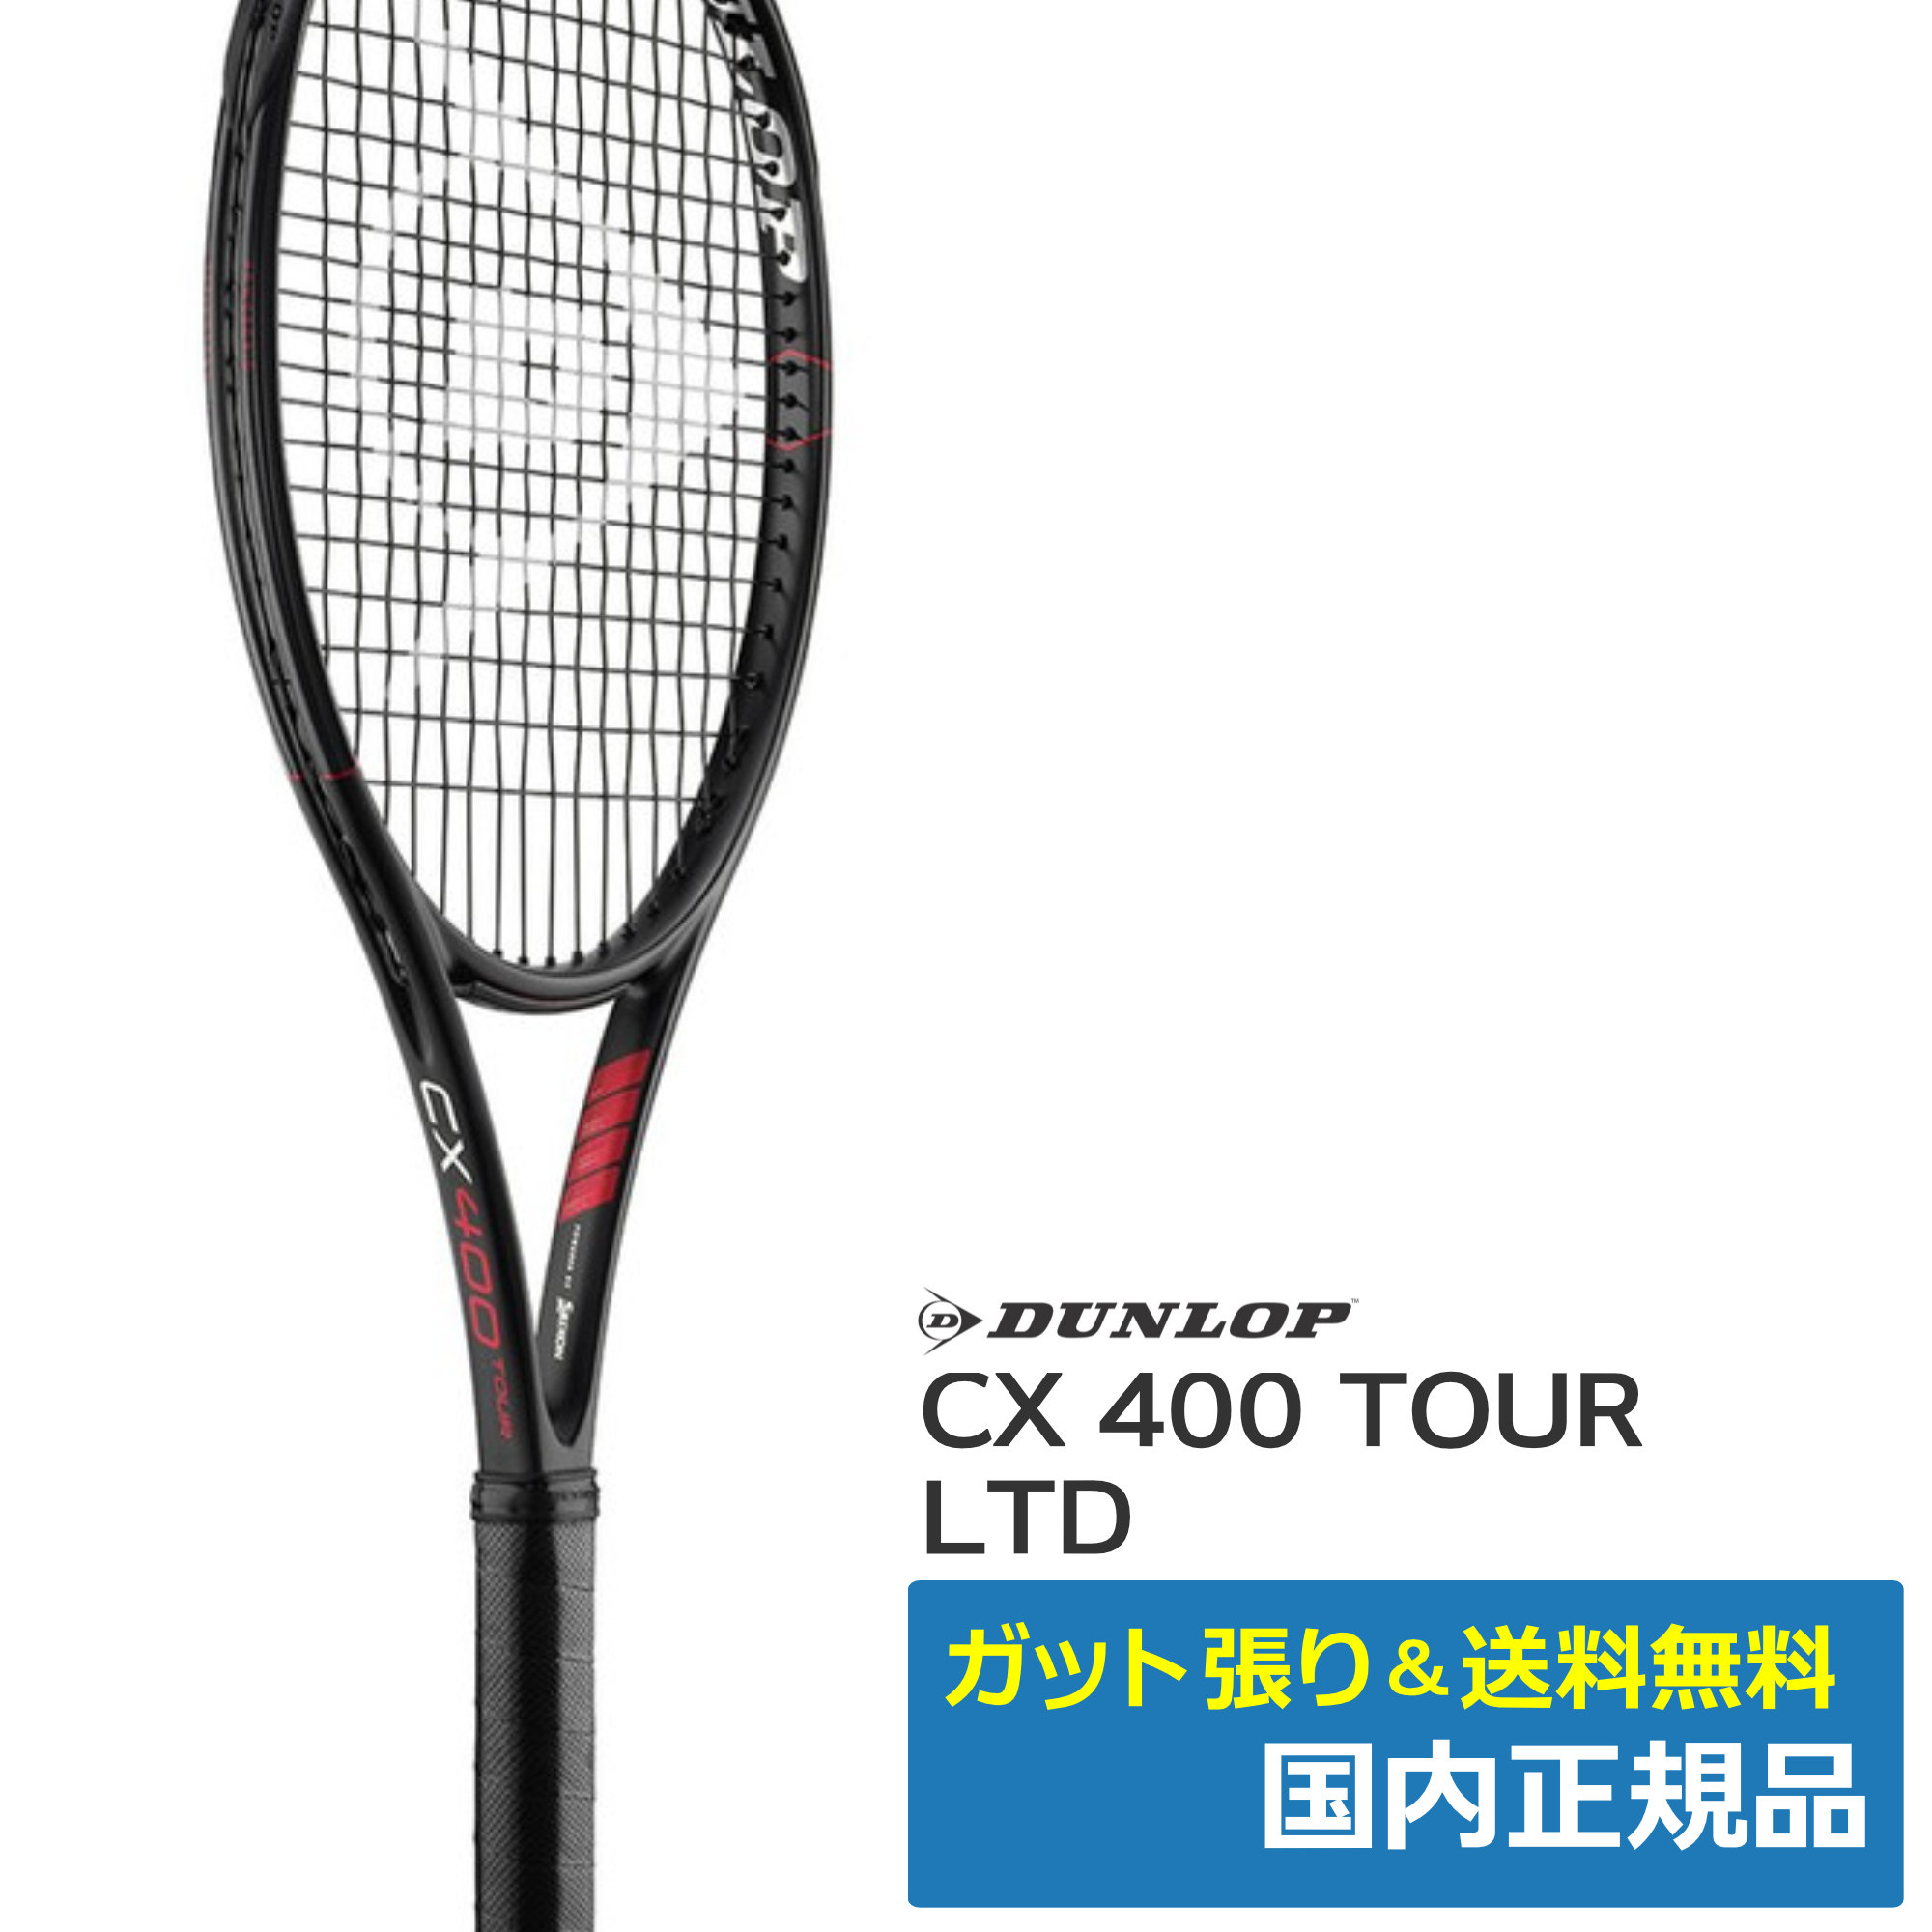 テニスラケットDUNLOP CX400 TOUR ブラックエディション 【袋付き美品】